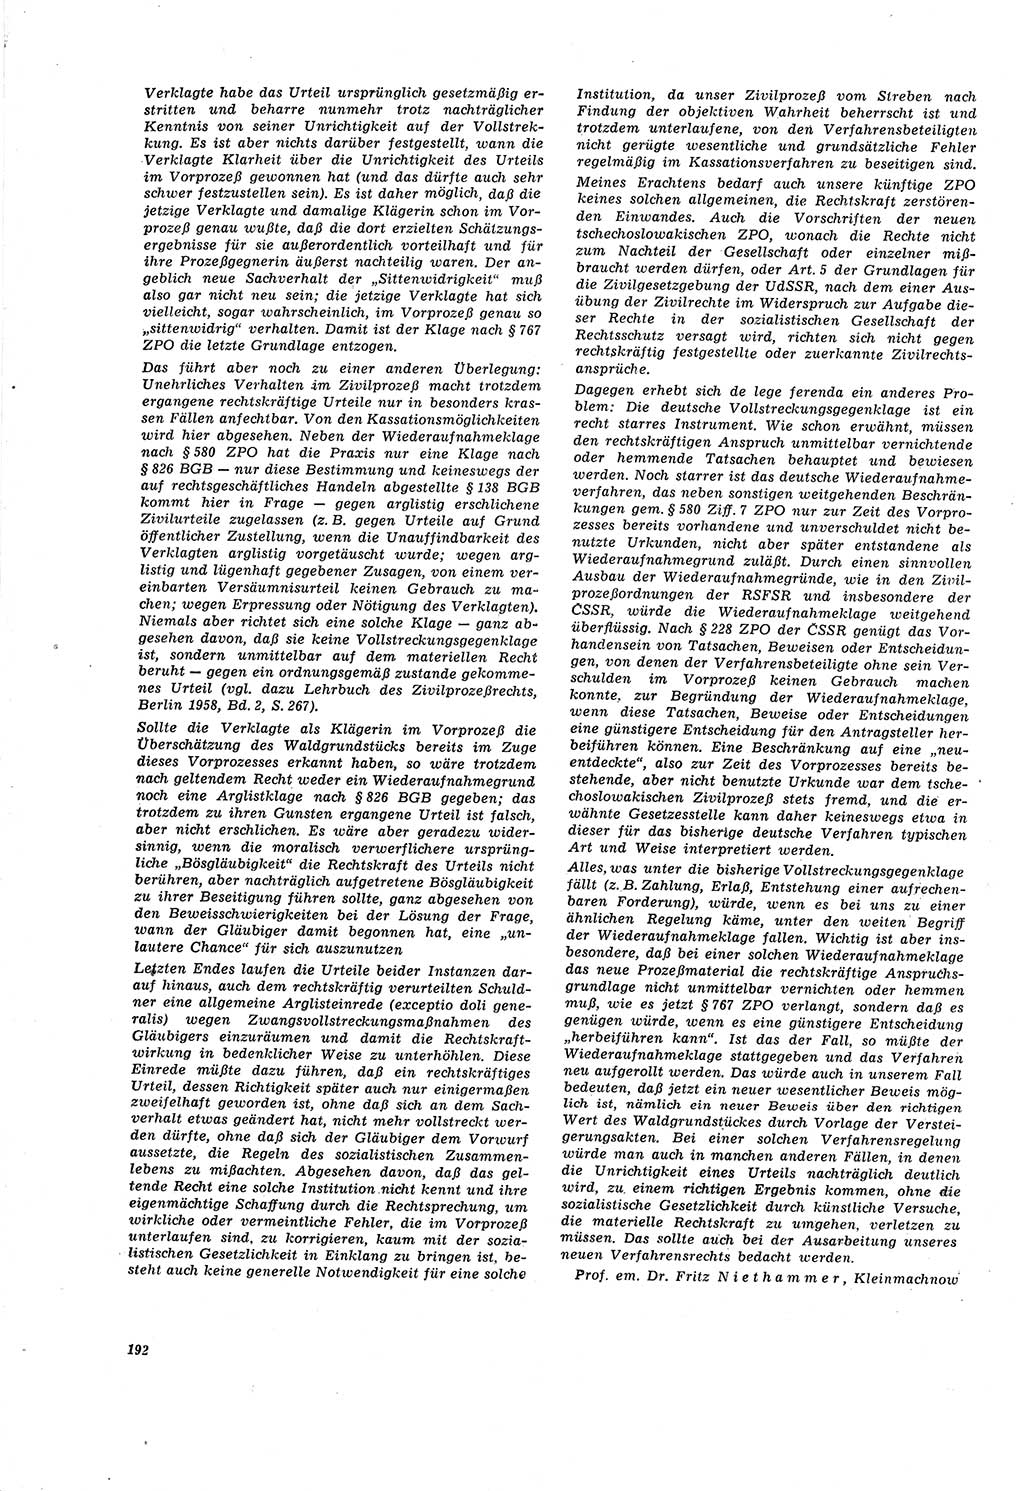 Neue Justiz (NJ), Zeitschrift für Recht und Rechtswissenschaft [Deutsche Demokratische Republik (DDR)], 20. Jahrgang 1966, Seite 192 (NJ DDR 1966, S. 192)